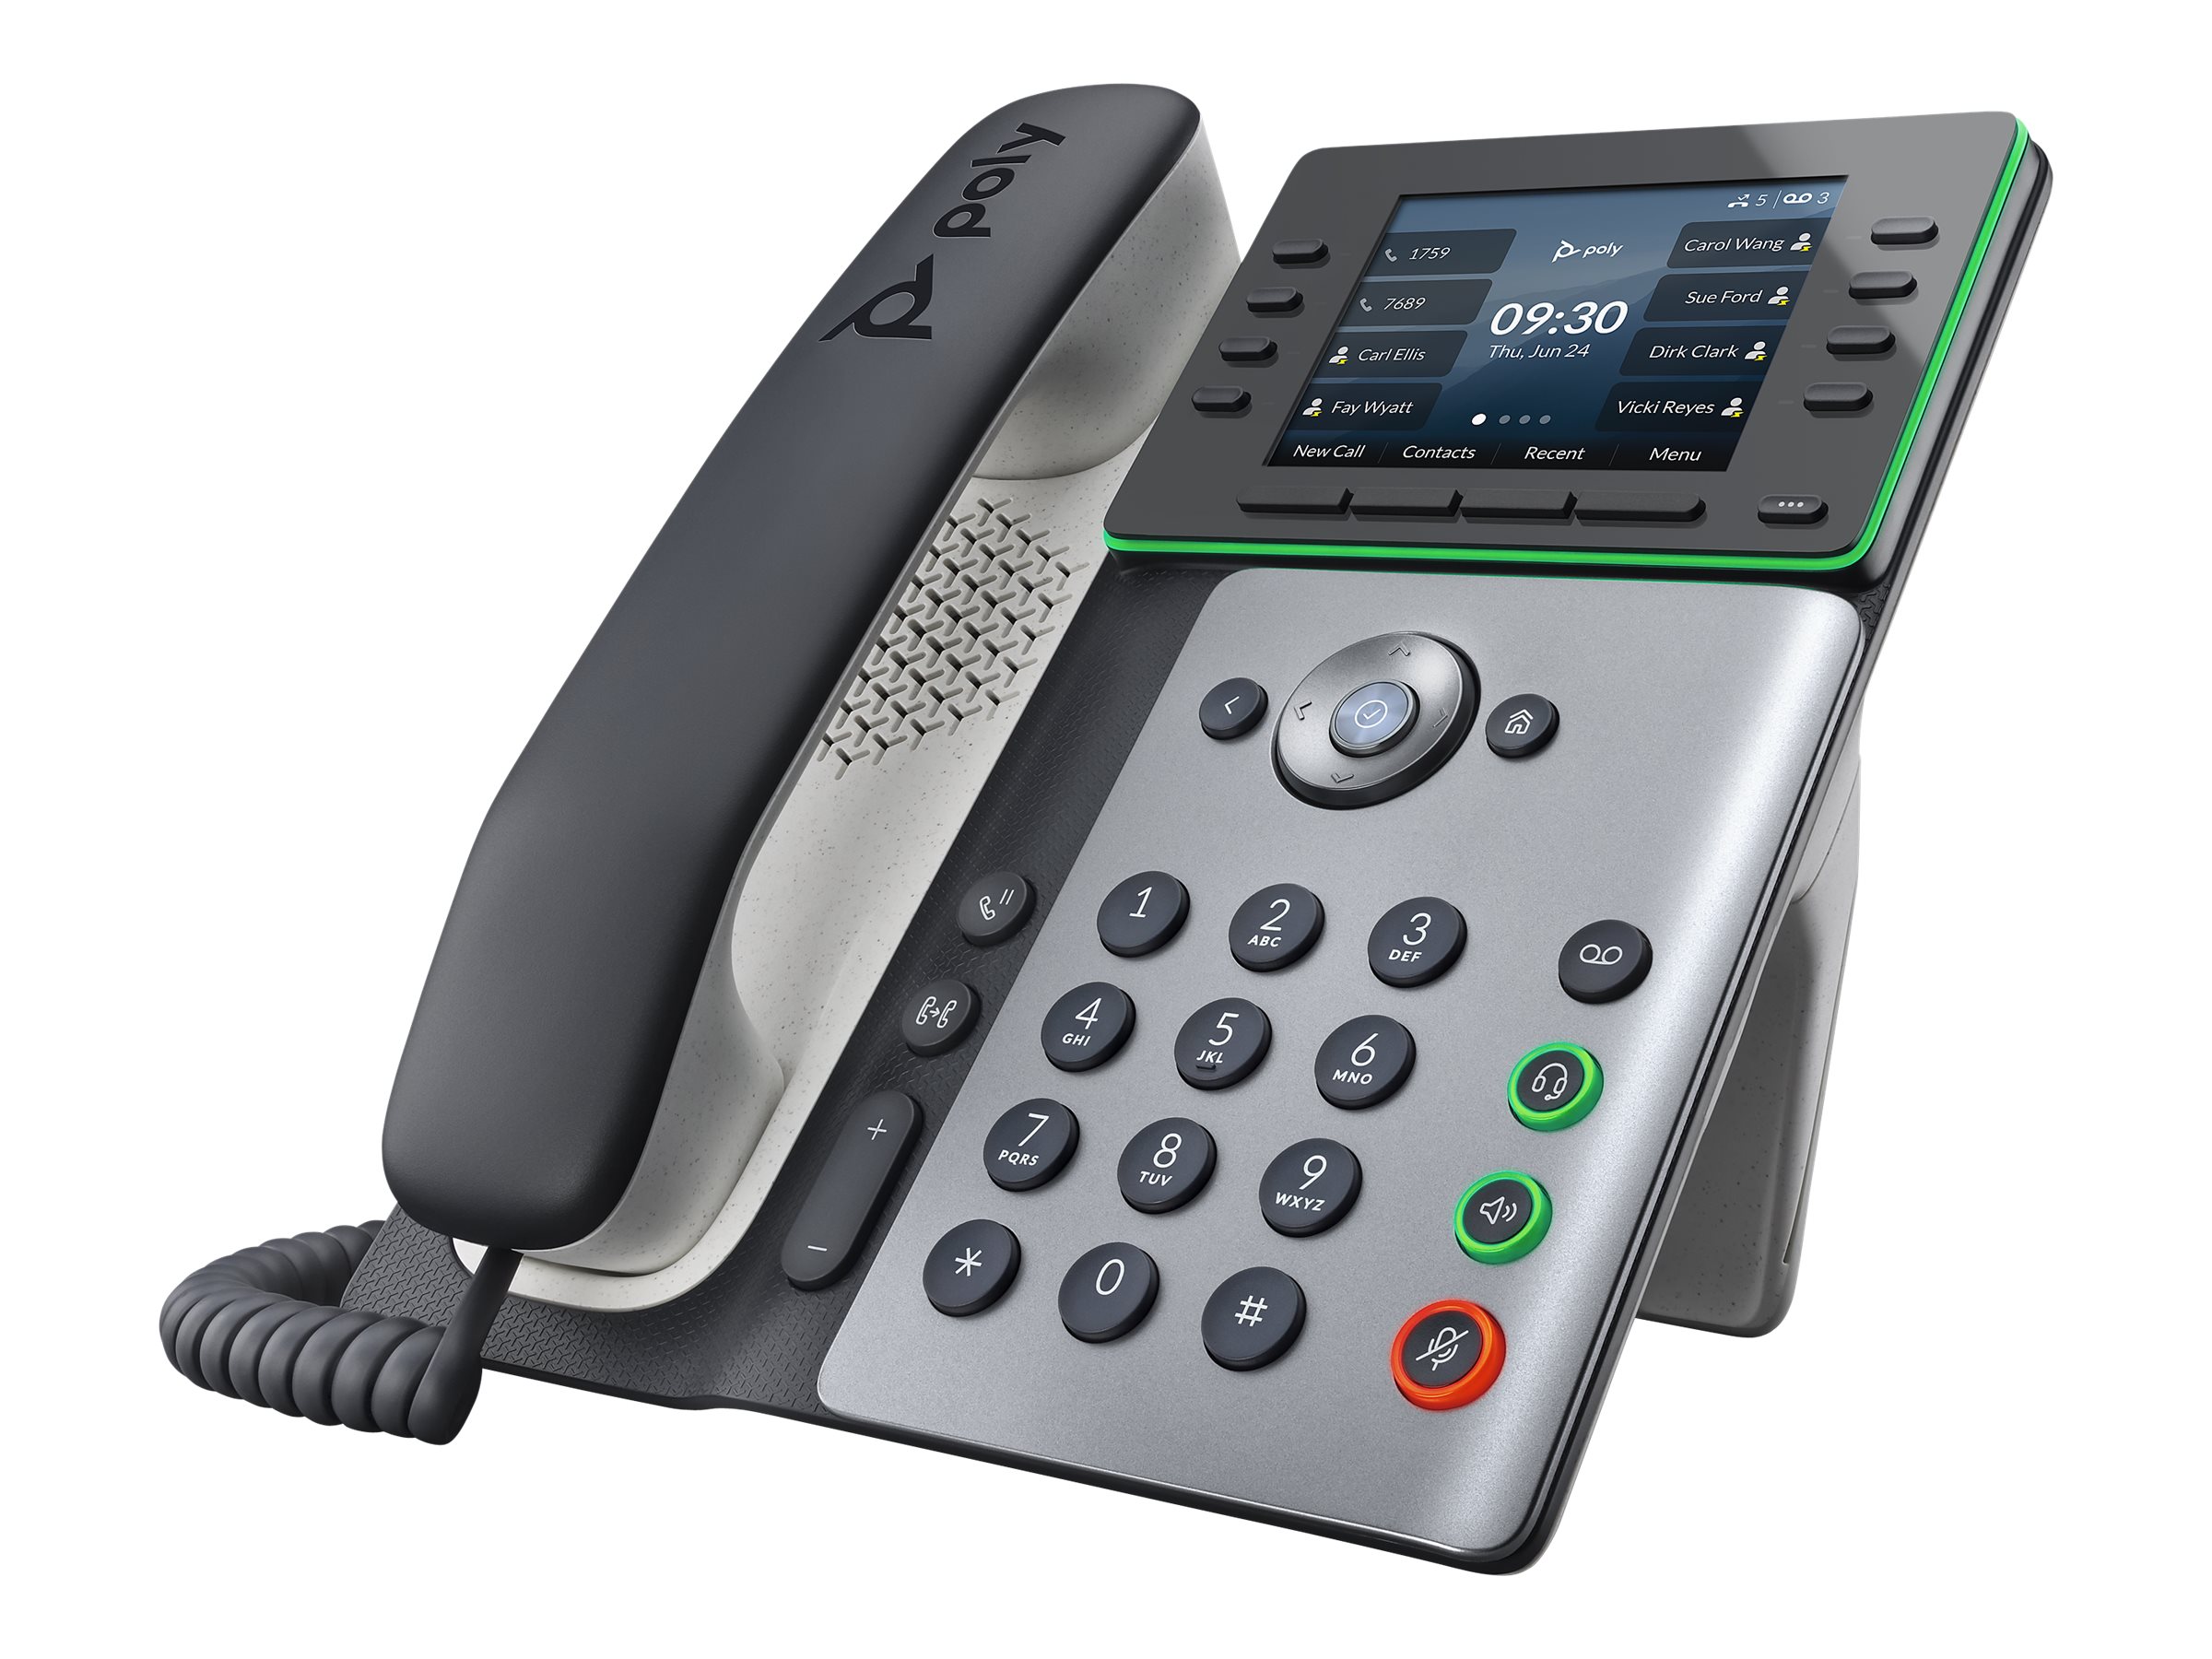 Poly Edge E350 - VoIP-Telefon mit Rufnummernanzeige/Anklopffunktion